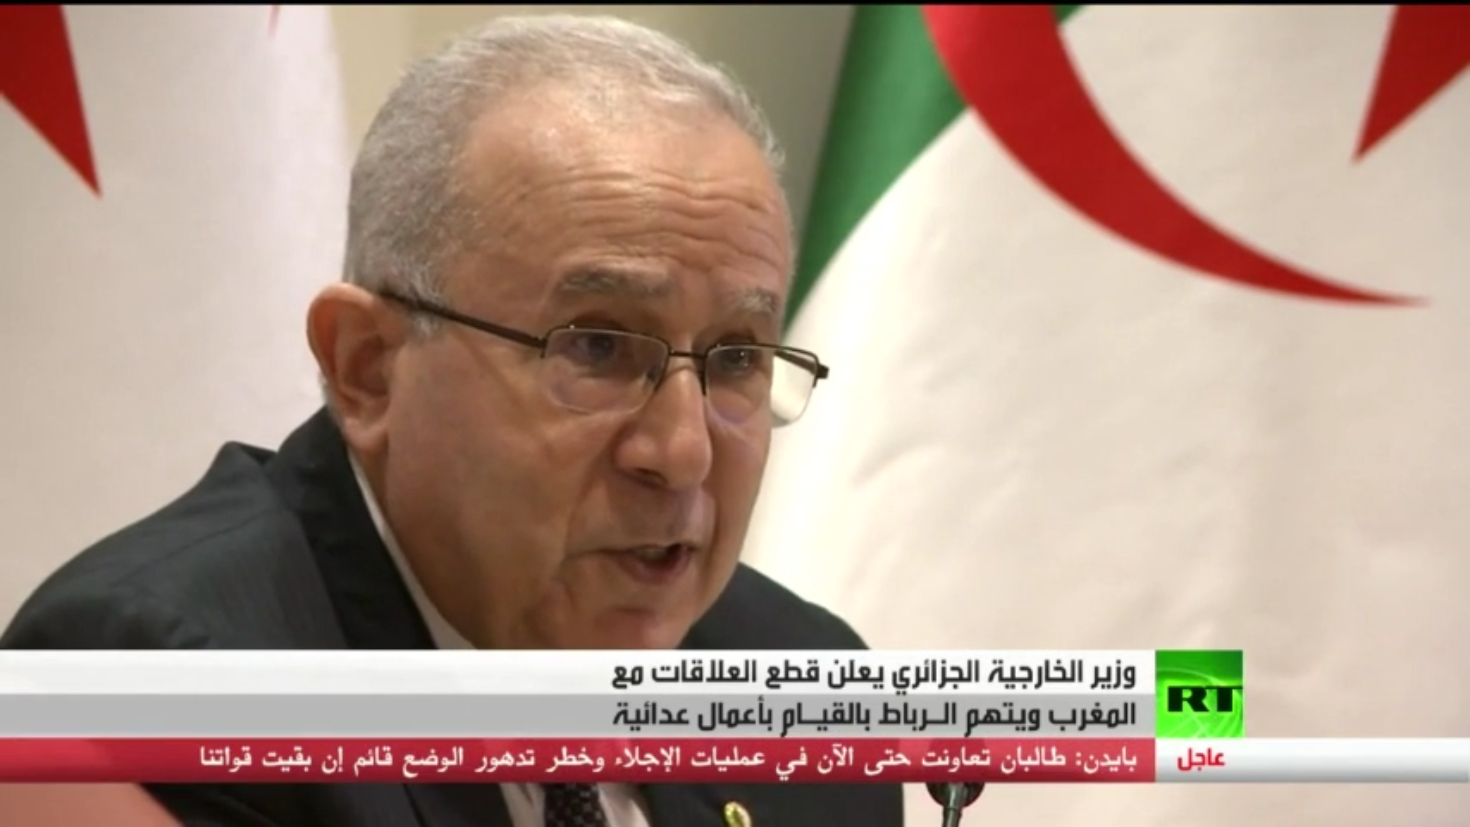 الجزائر تعلن عن قطع العلاقات مع المغرب